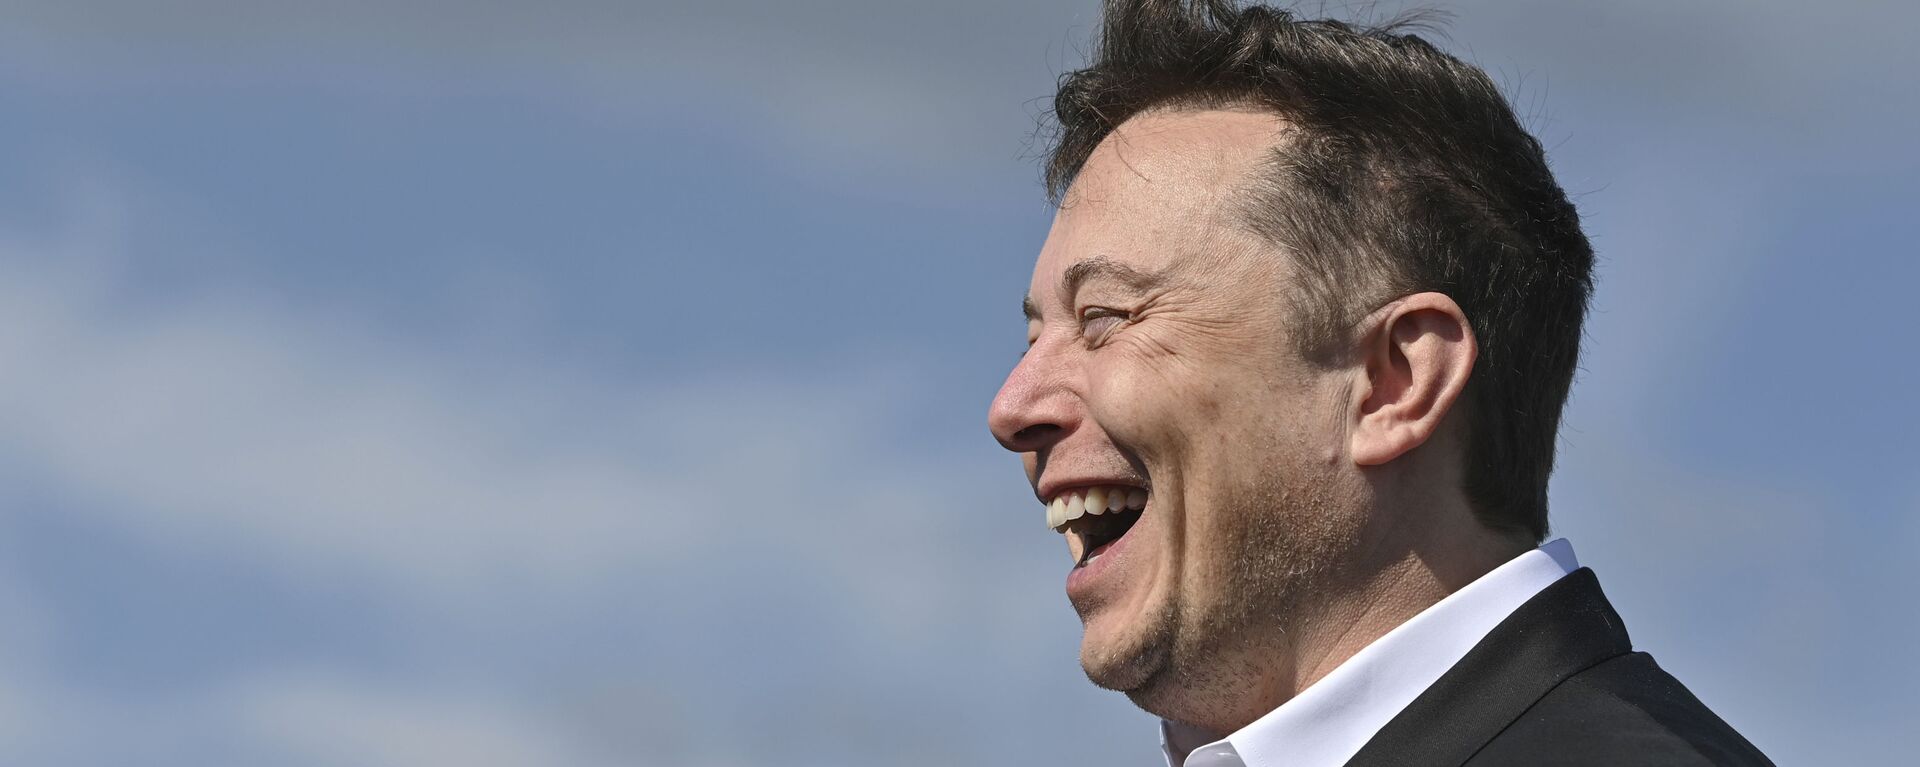 Doanh nhân công nghệ Elon Musk cười khi đến thăm công trường xây dựng Tesla Gigafactory ở Gruenheide gần Berlin, Đức, ngày 3 tháng 9 năm 2020. - Sputnik Việt Nam, 1920, 31.12.2022